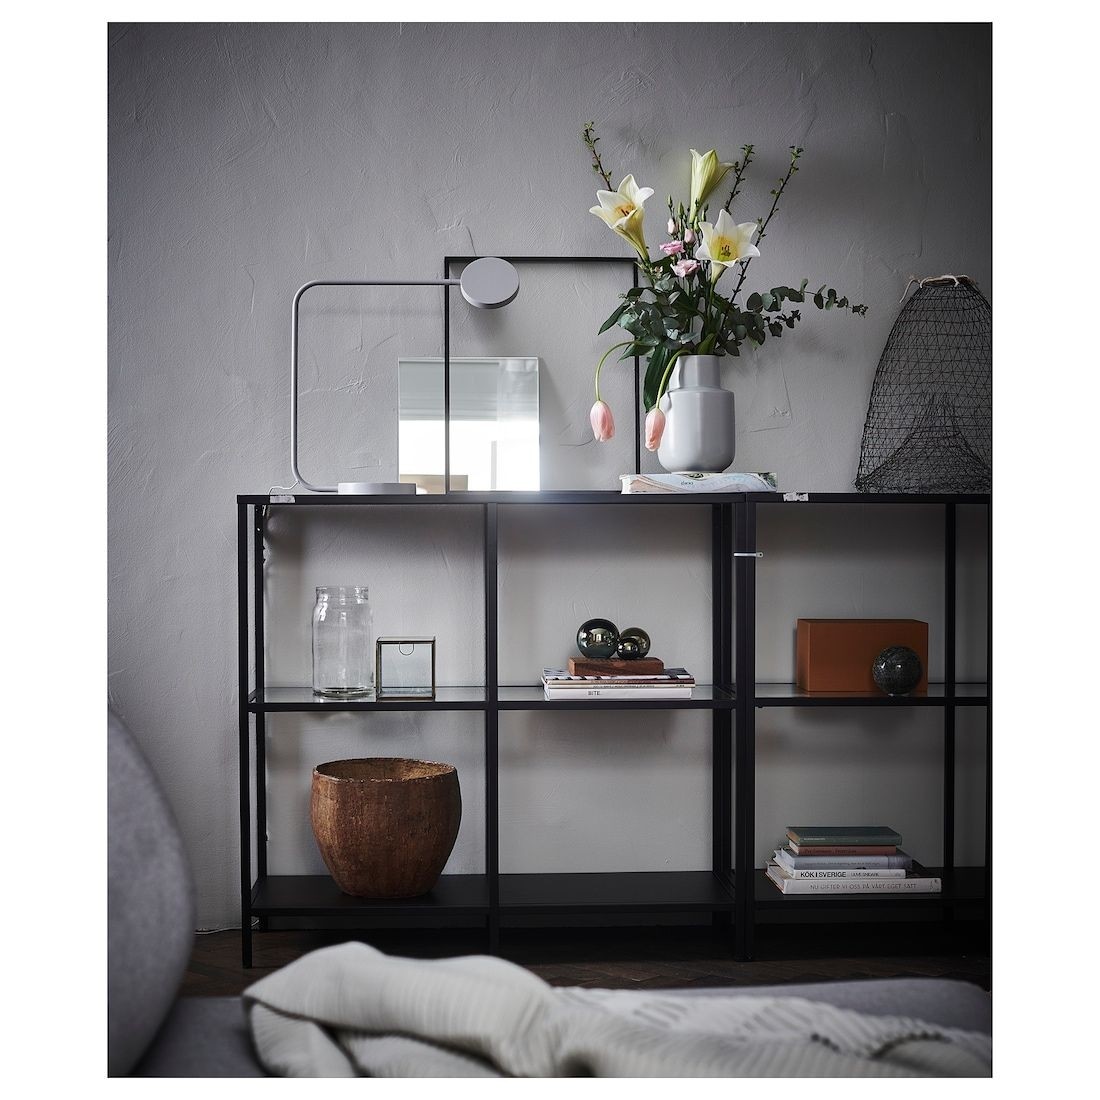 Ikea vittsjo black brown glass shelf unit living room